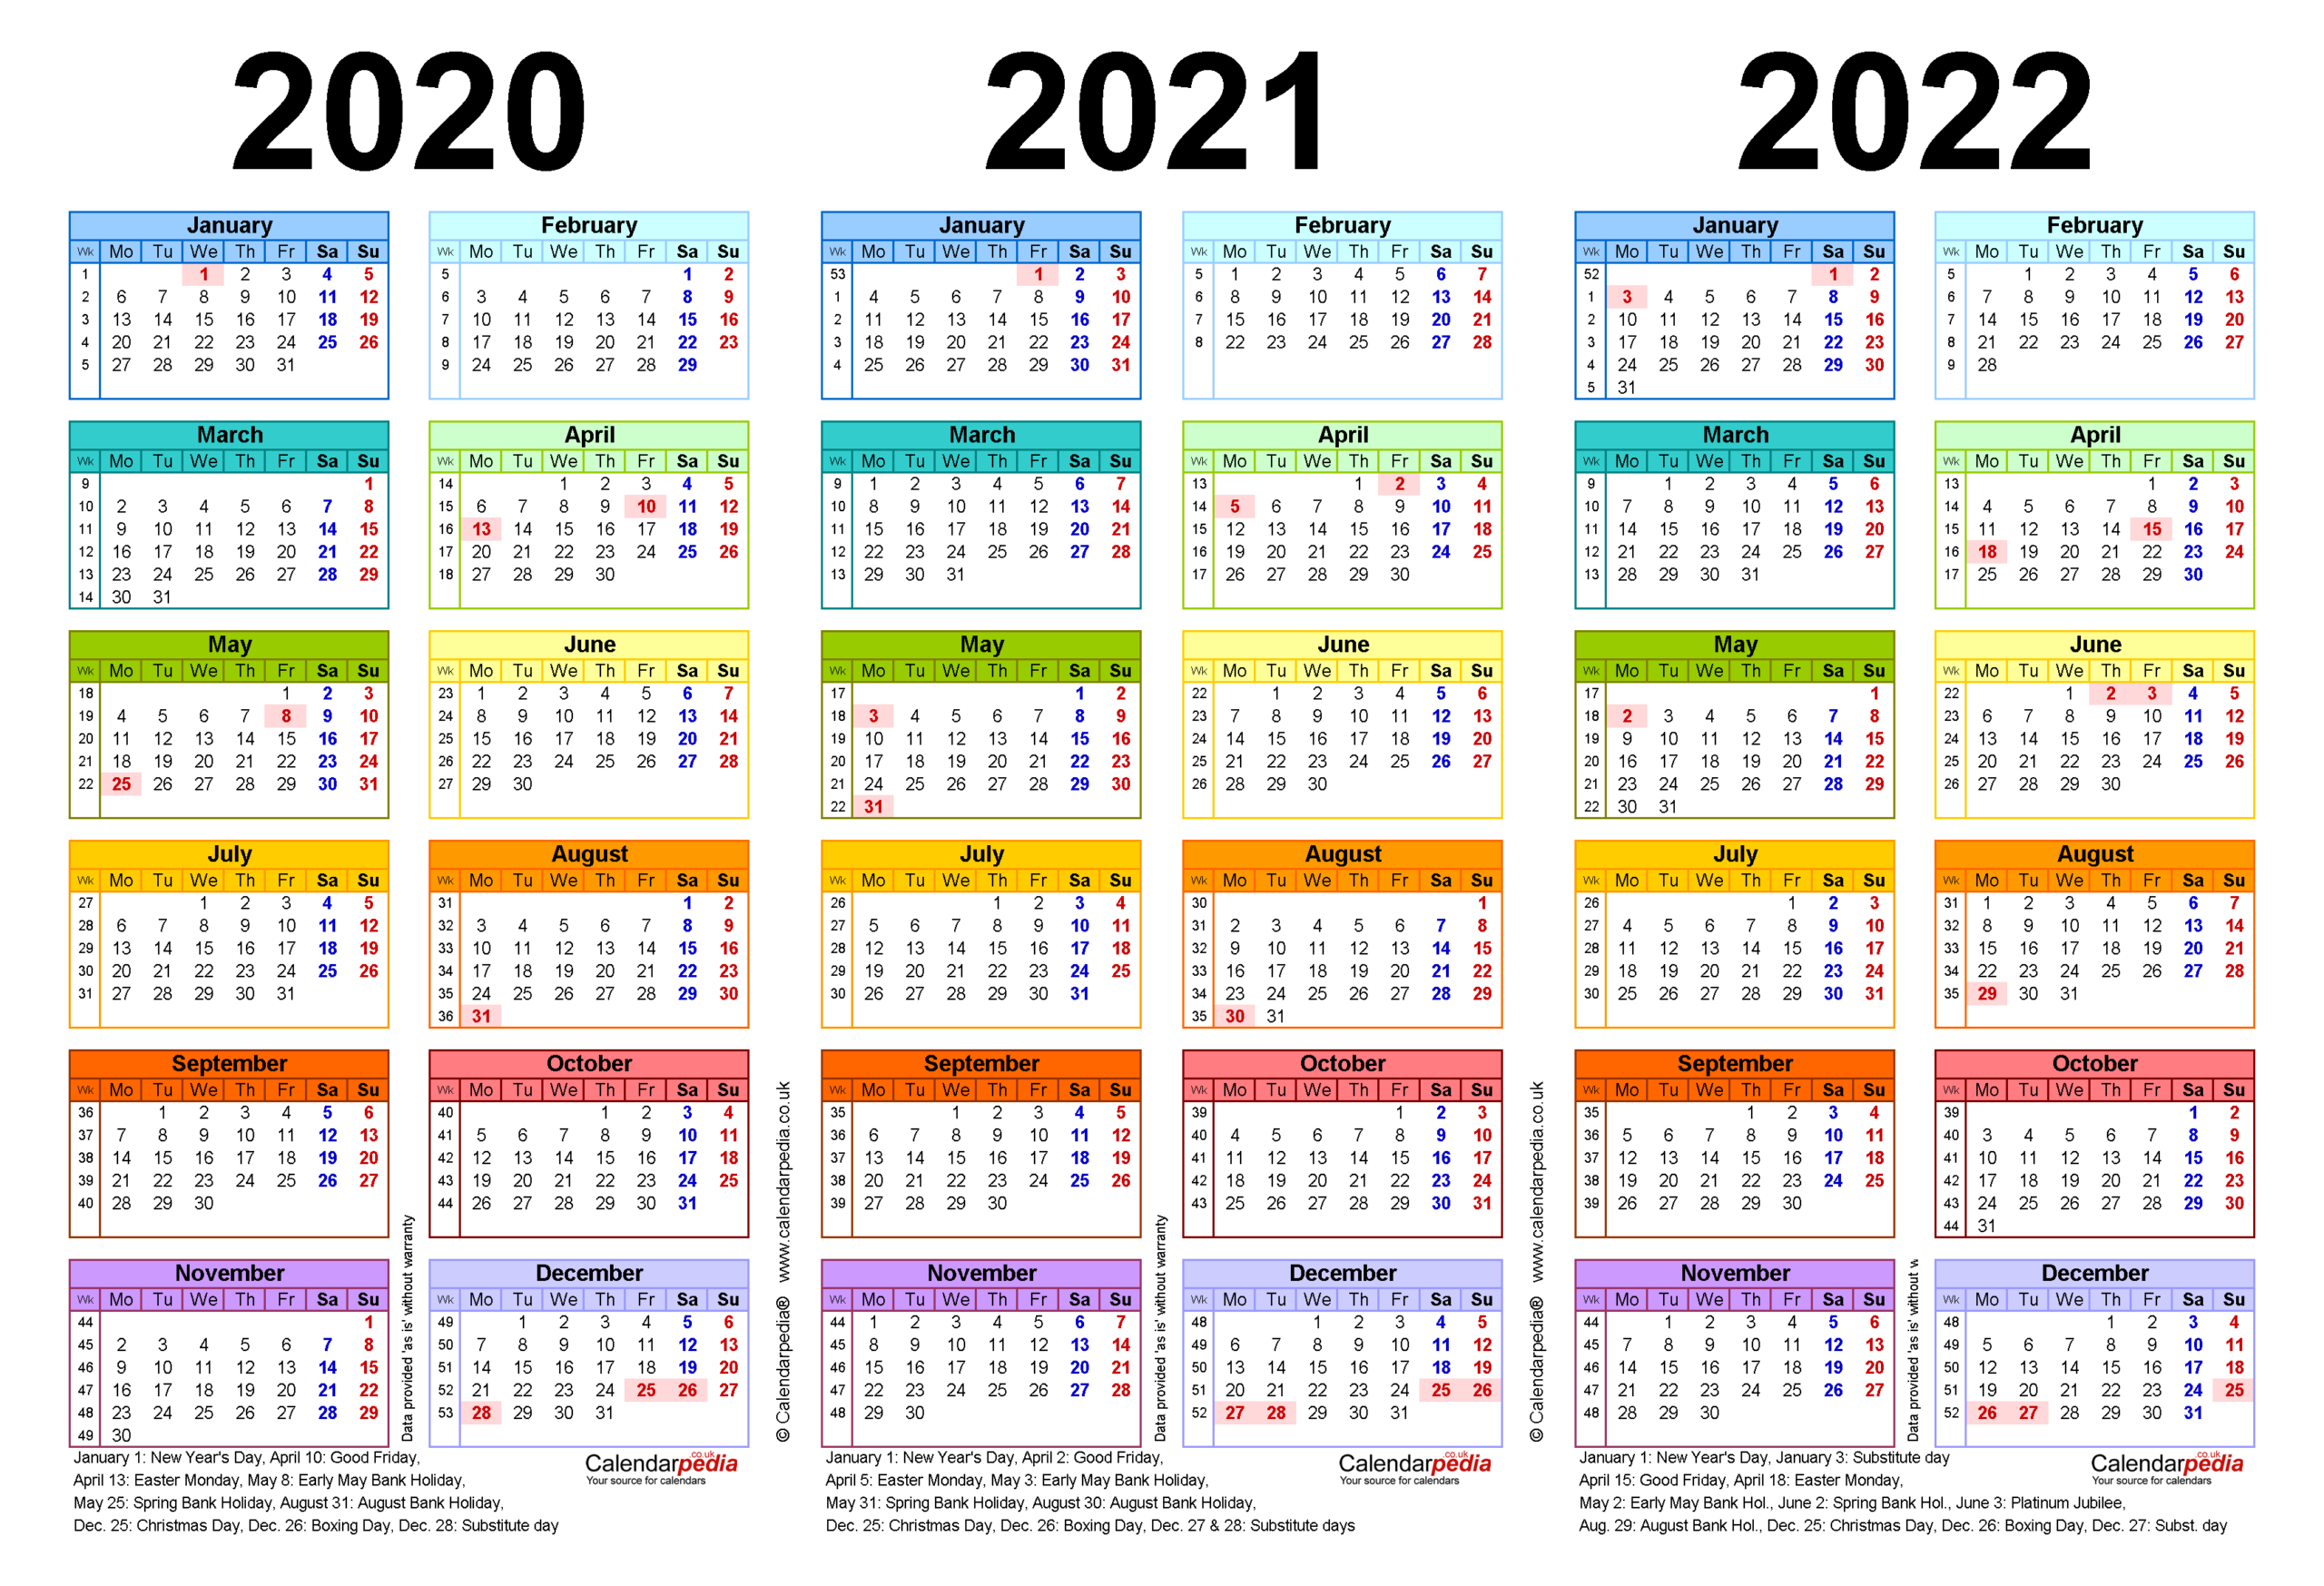 Queens Calendar 2022